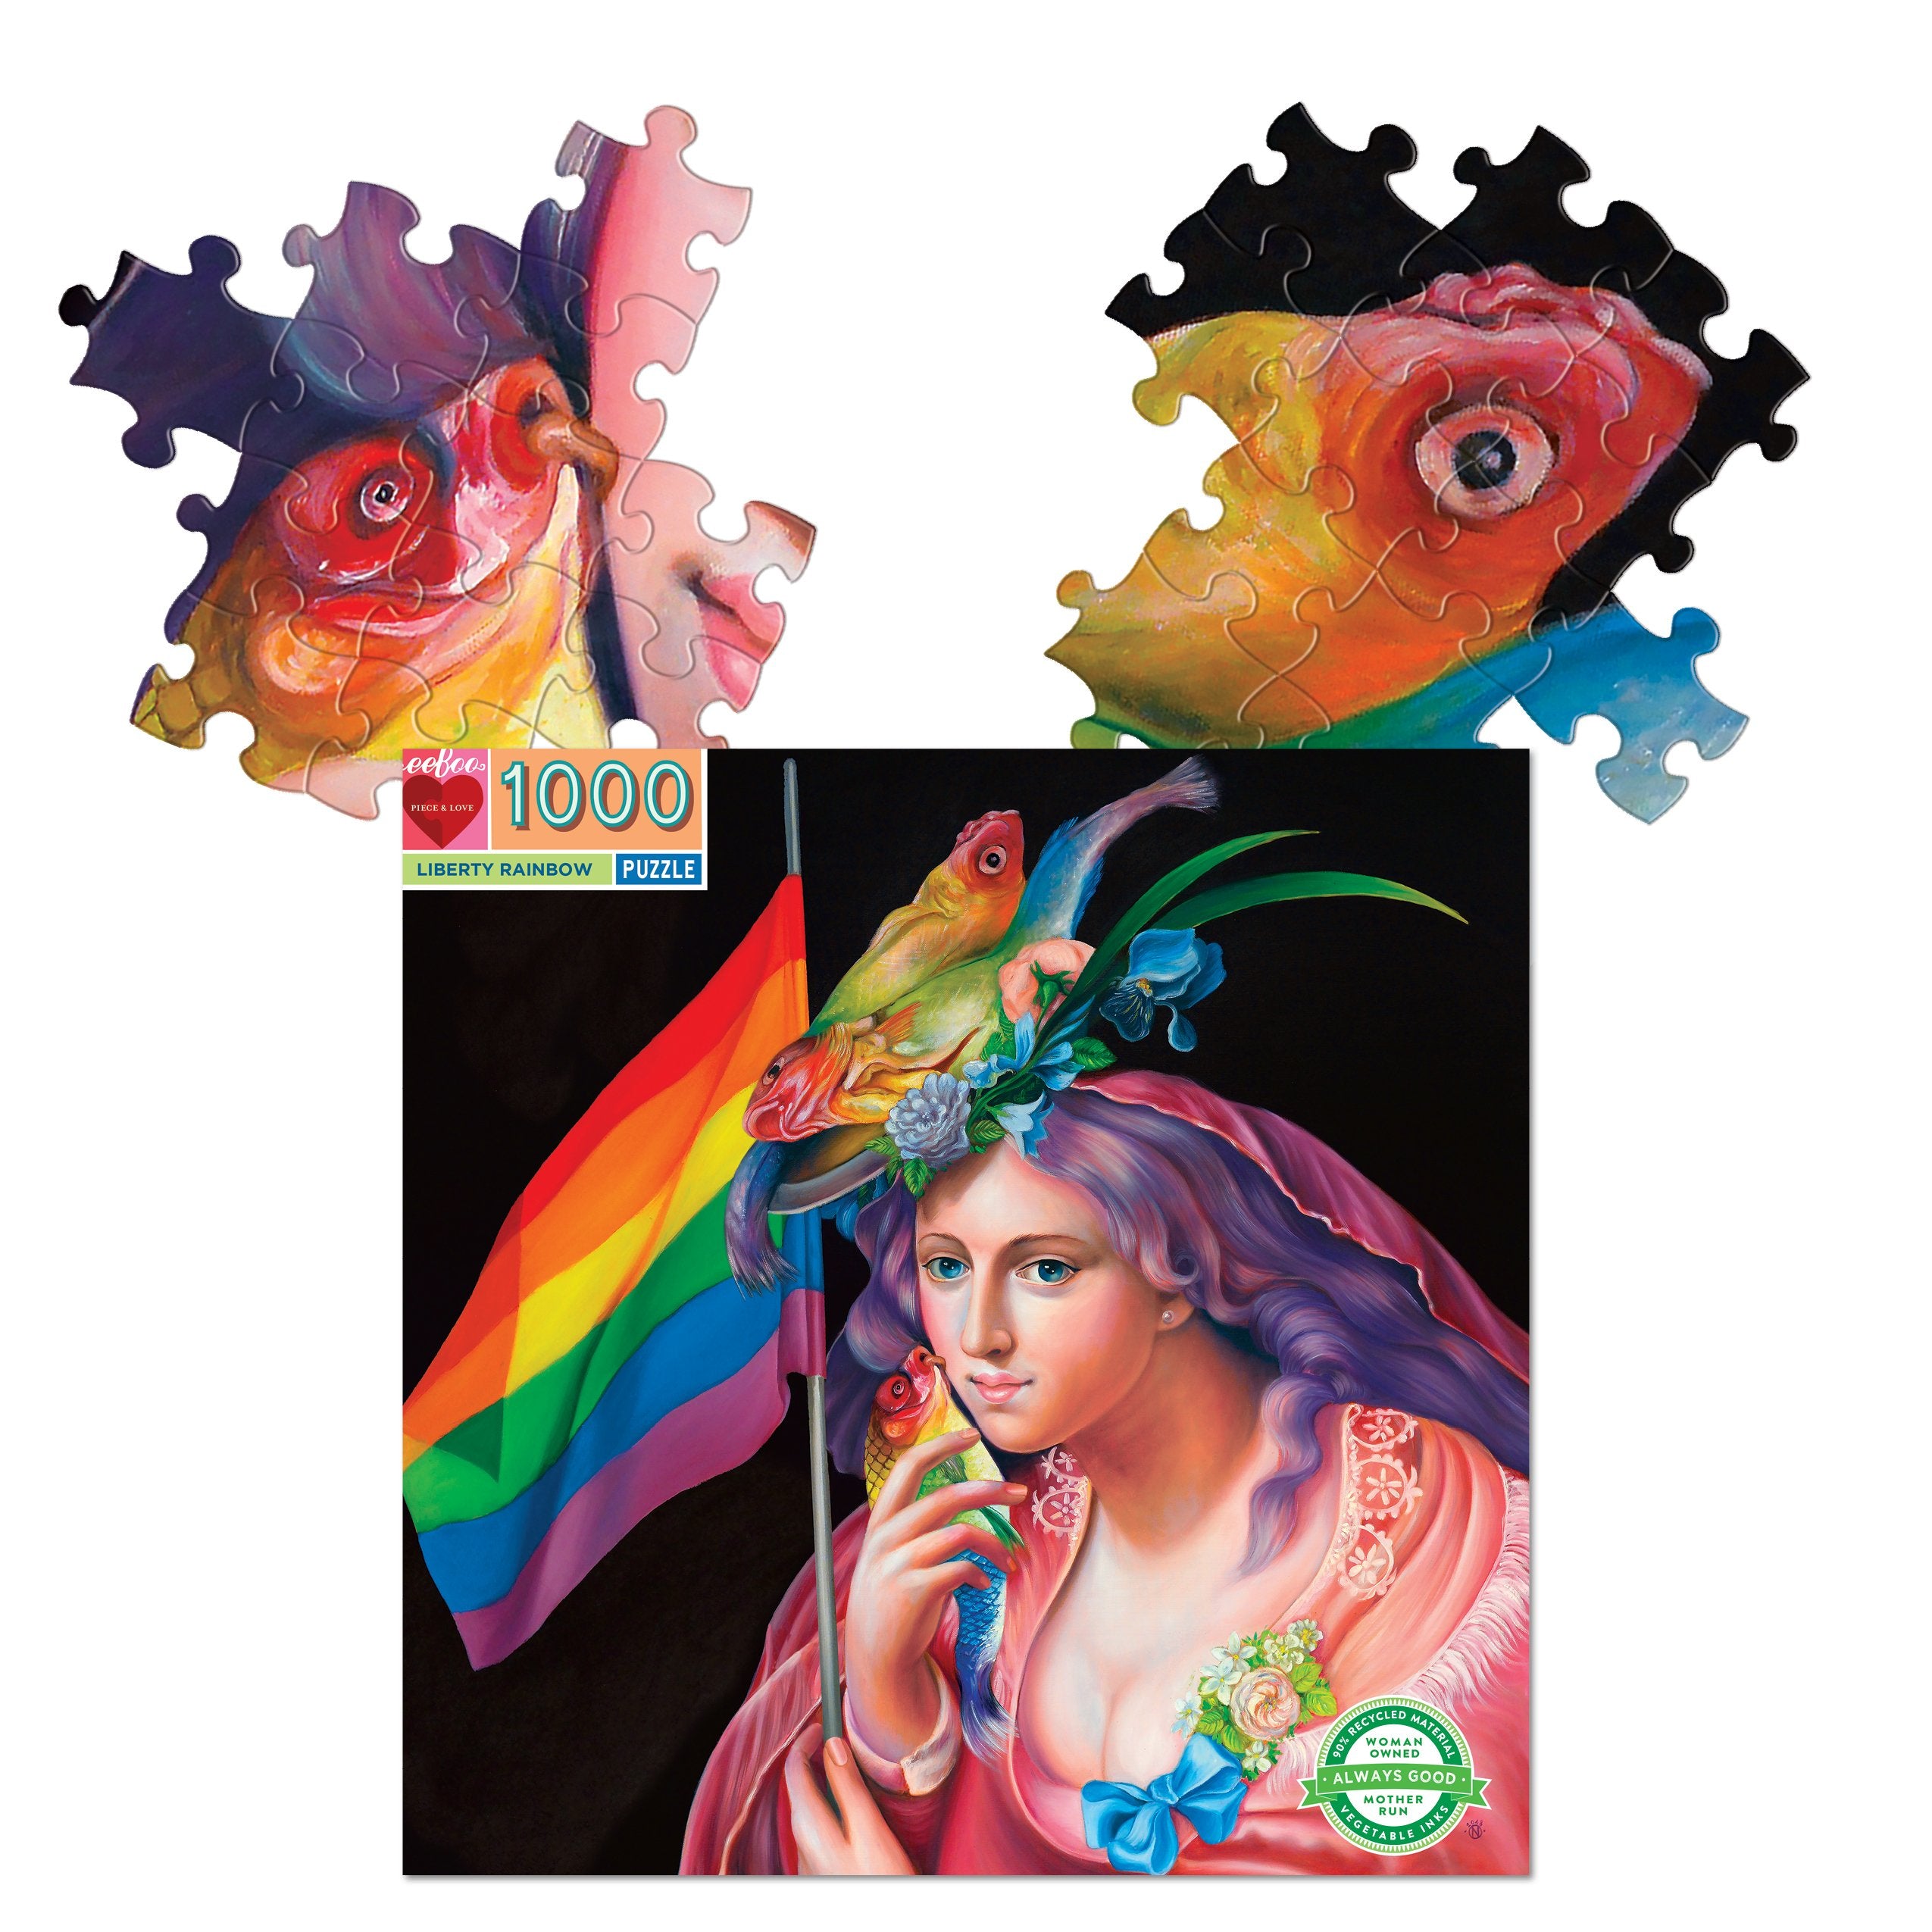 Liberty Rainbow Puzzle